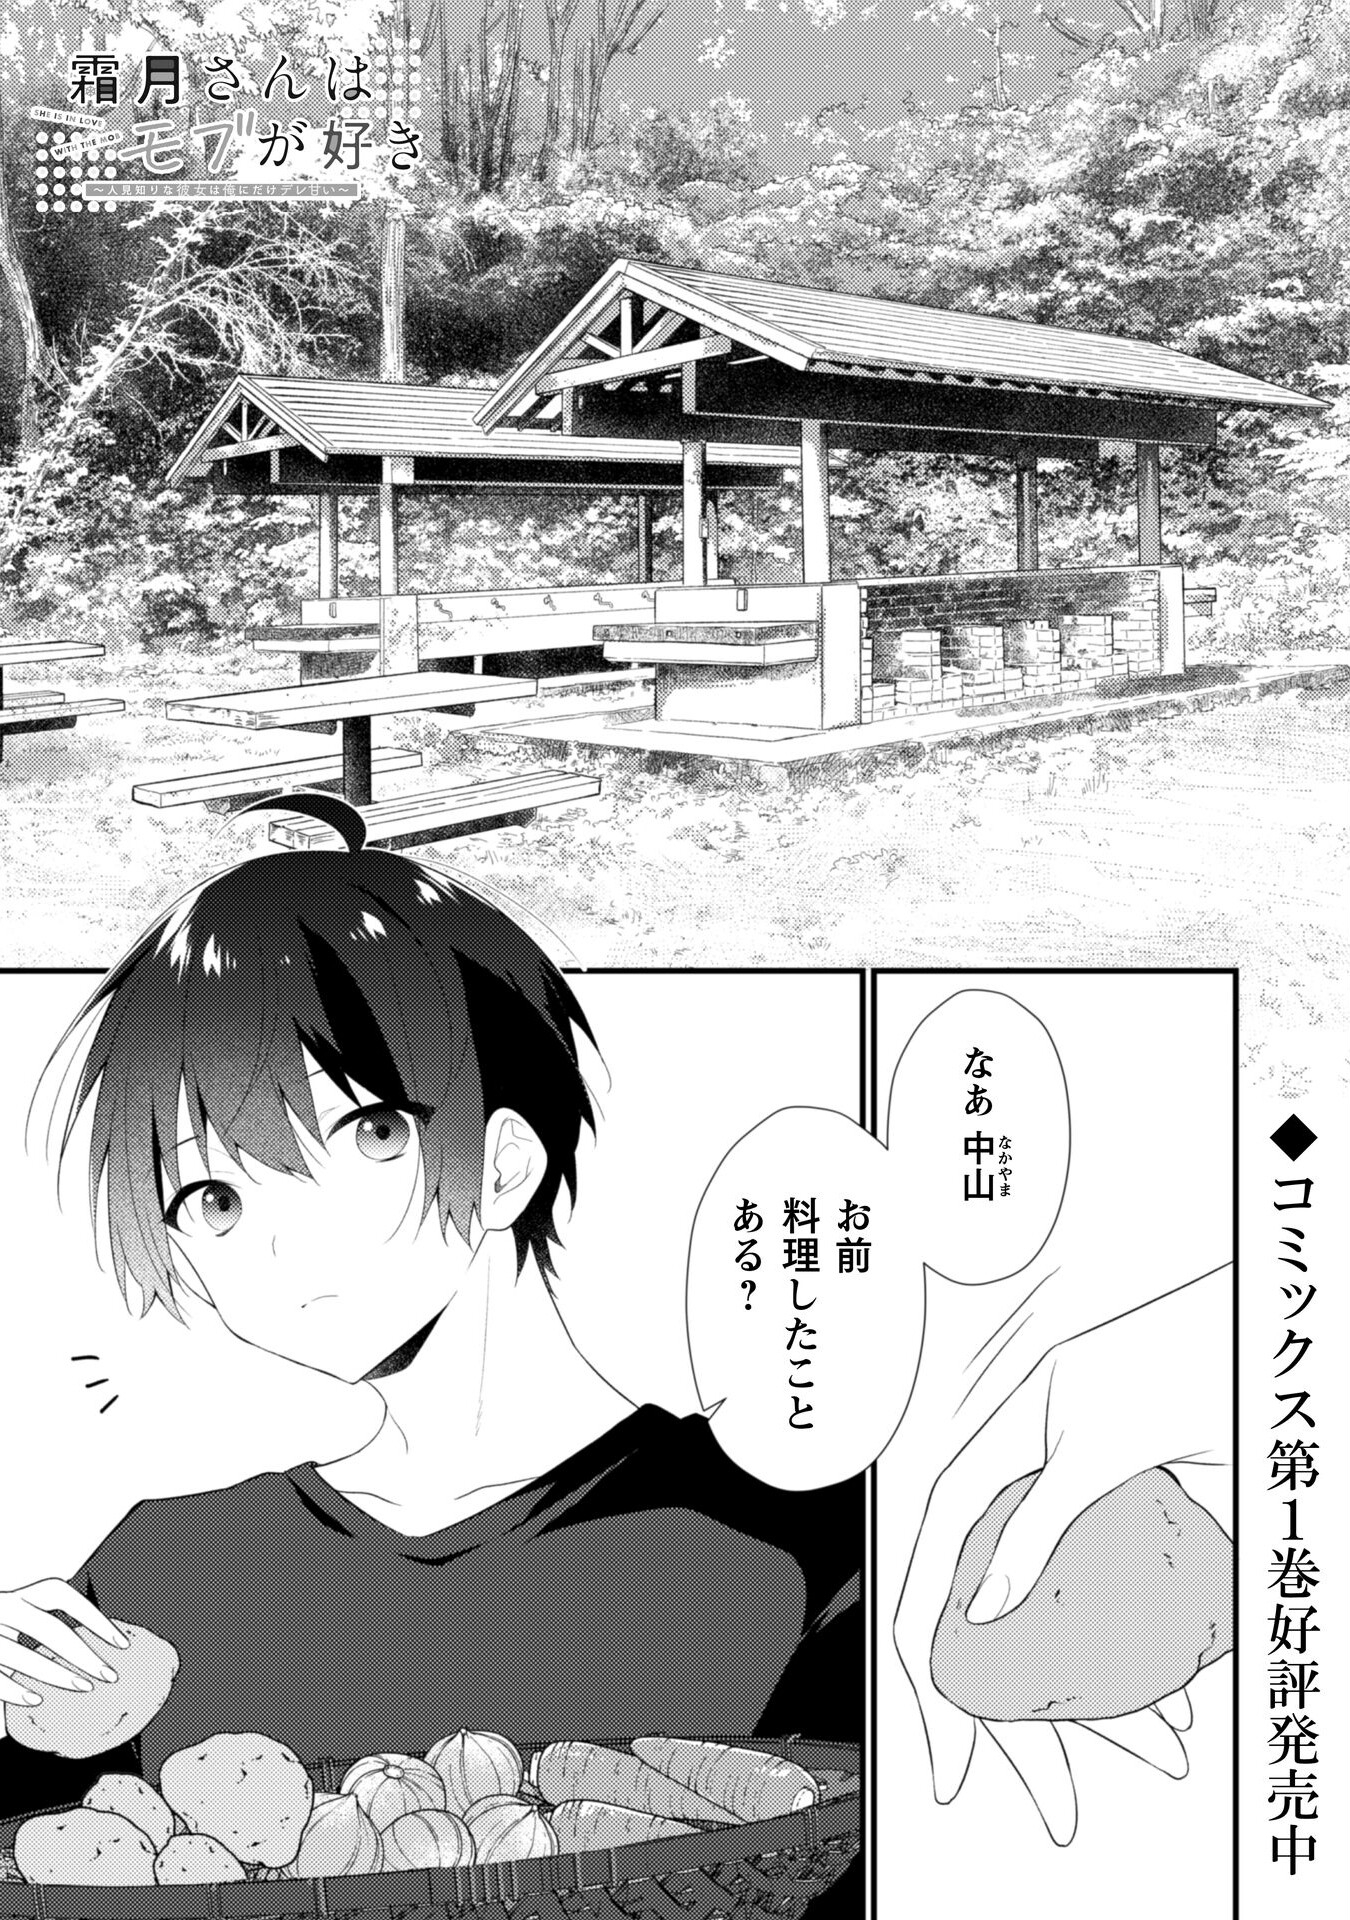 Shimotsuki-san wa Mobu ga Suki - Chapter 11 - Page 2